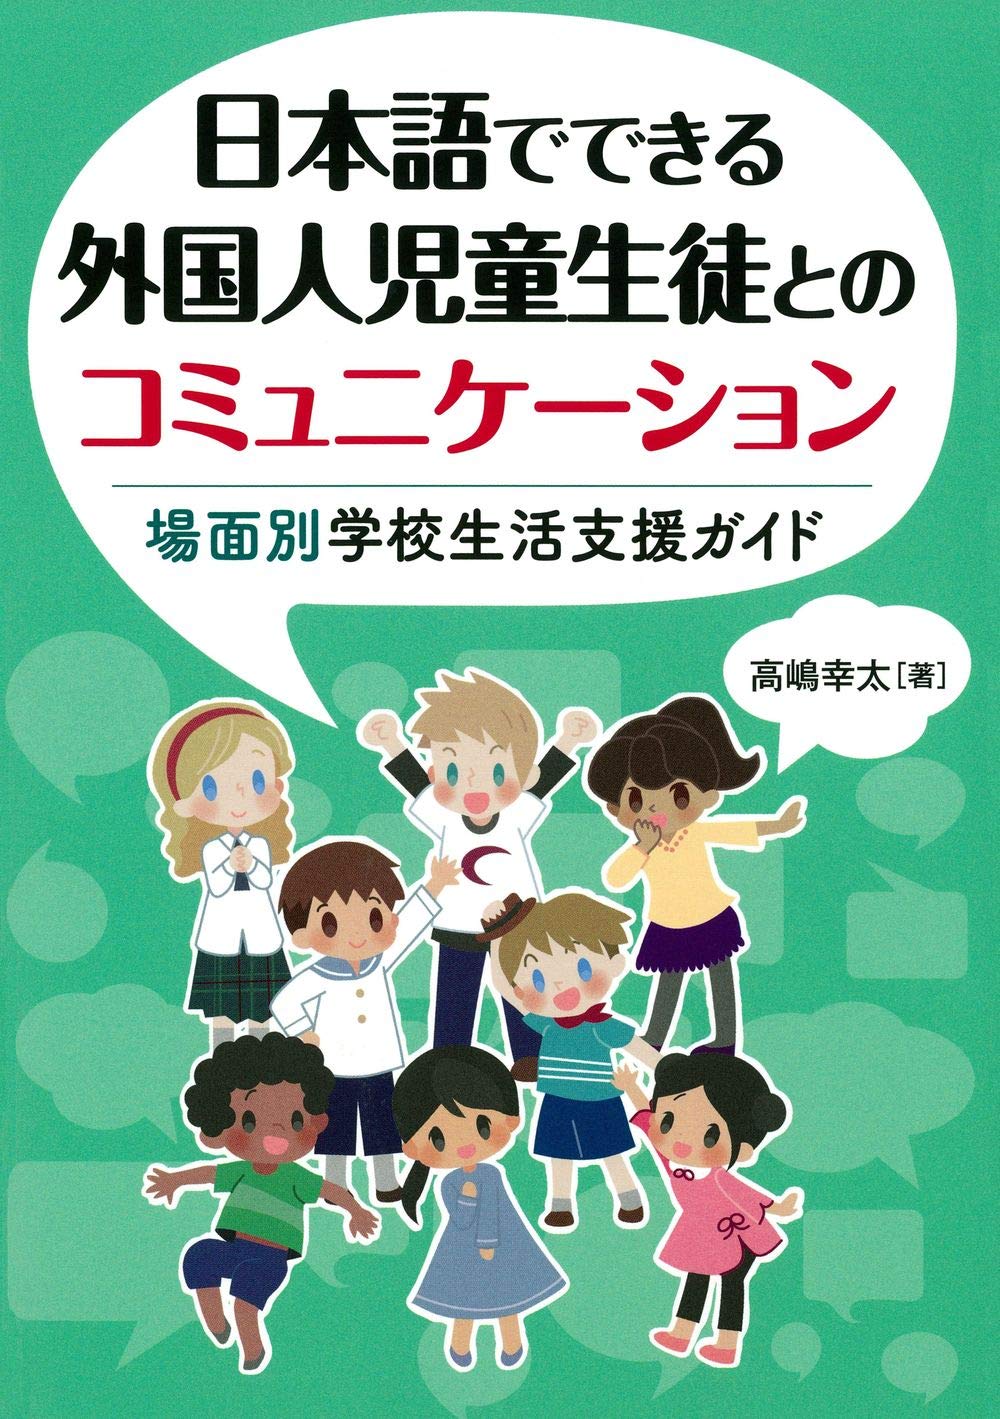 『日本語でできる外国人児童生徒とのコミュニケーション：場面別学校生活支援ガイド』